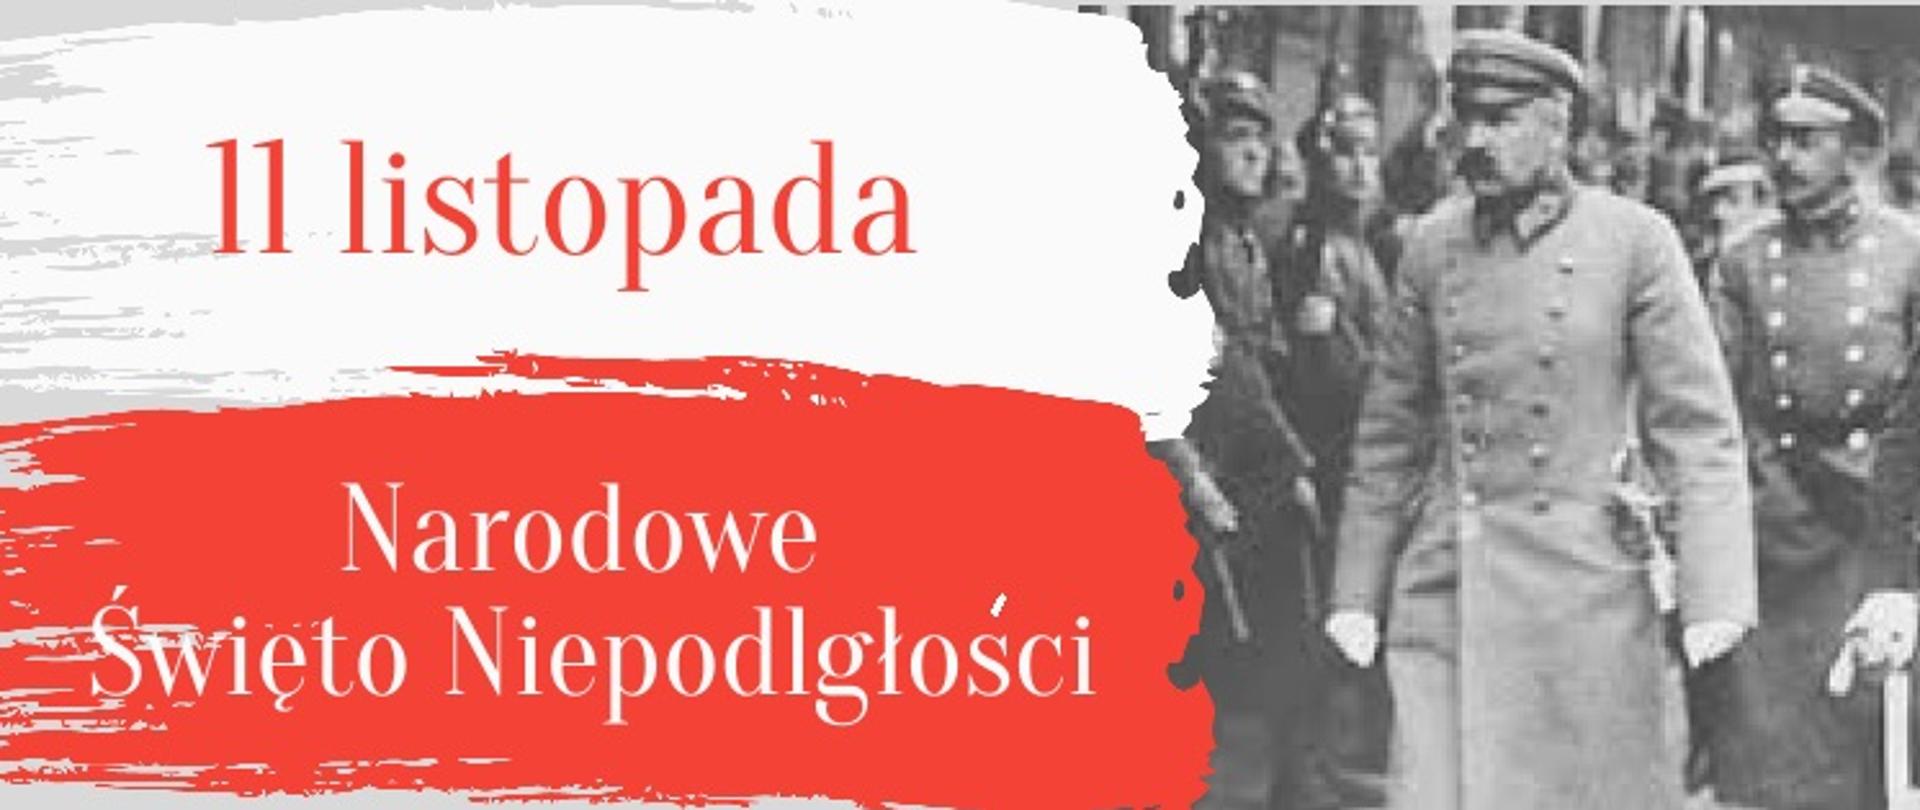 grafika przedstawia flagę Polski z napisem 11 listopada Narodowe Święto Niepodległości, po prawej stronie fotografia z wizerunkiem Józefa Piłsudskiego